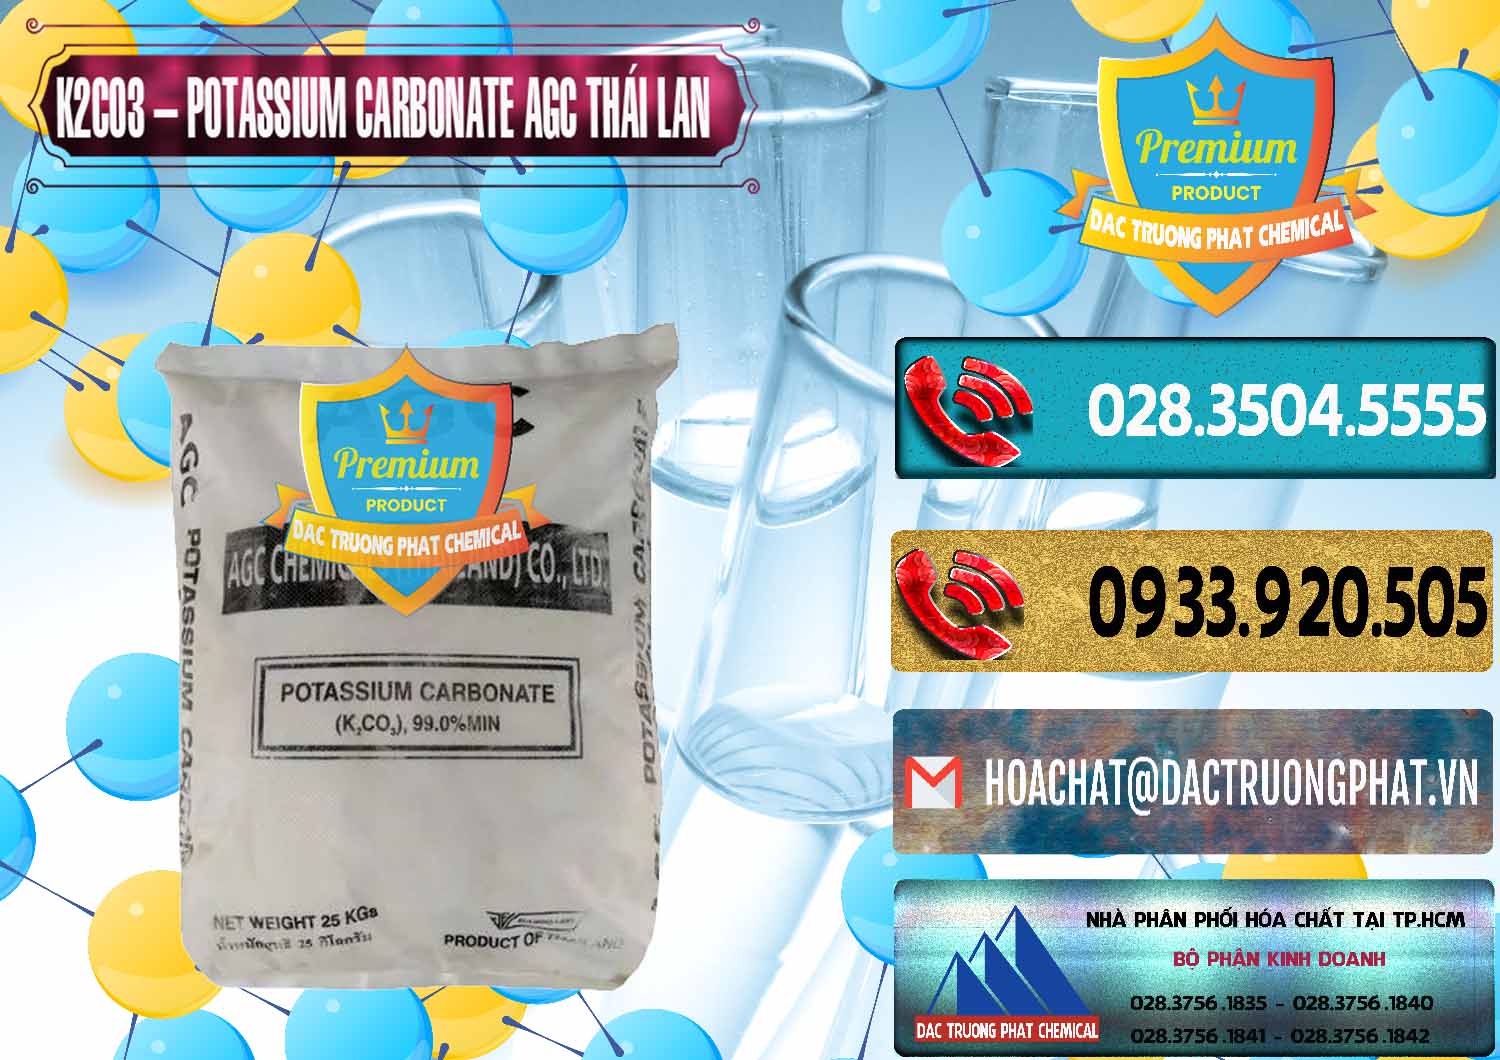 Công ty chuyên phân phối và bán K2Co3 – Potassium Carbonate AGC Thái Lan Thailand - 0471 - Cty chuyên kinh doanh _ cung cấp hóa chất tại TP.HCM - hoachatdetnhuom.com